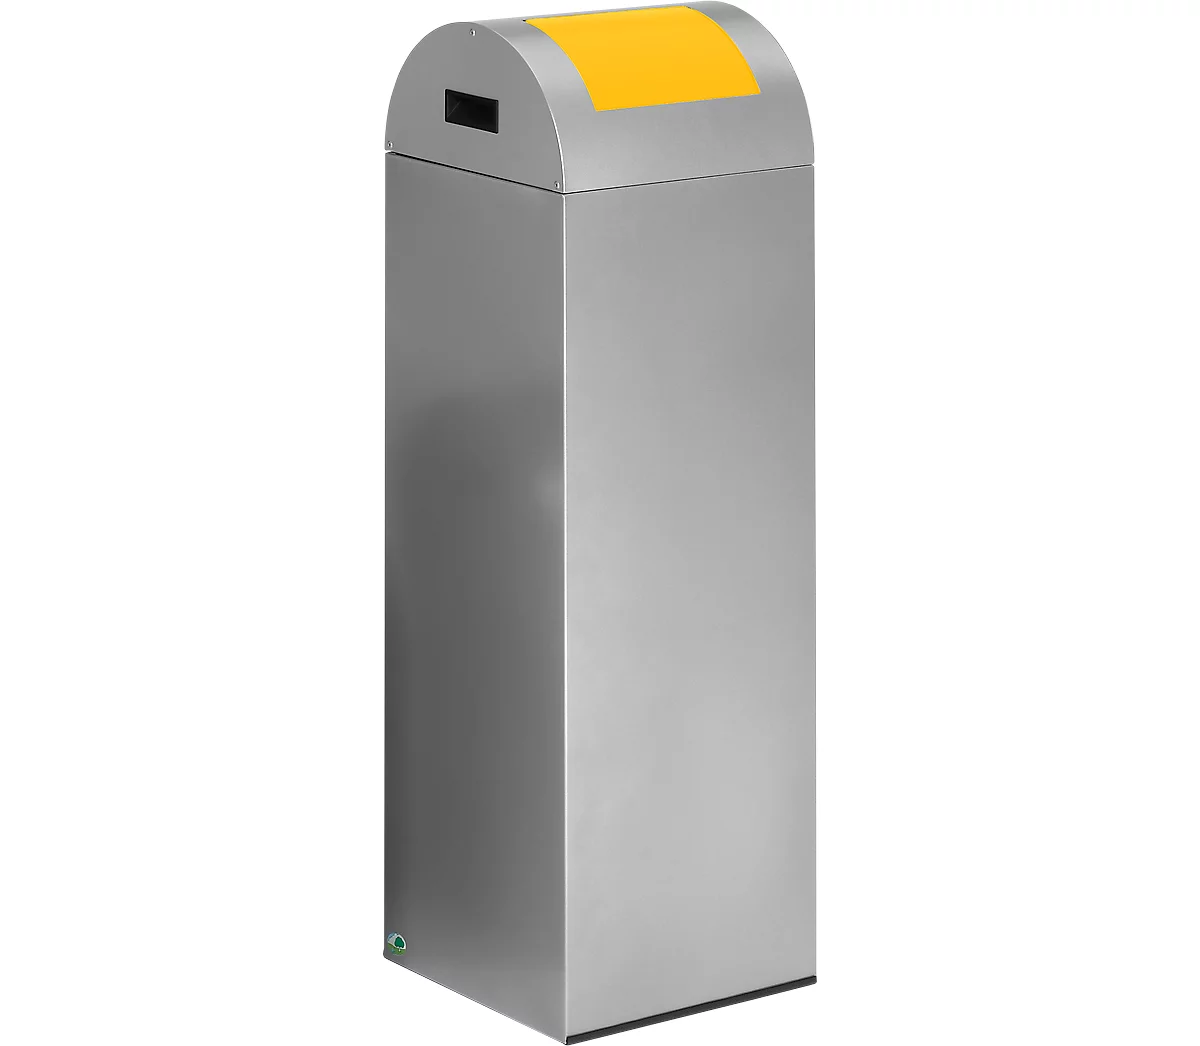 Colector de residuos reciclables autoextinguible 85R, plata/amarillo